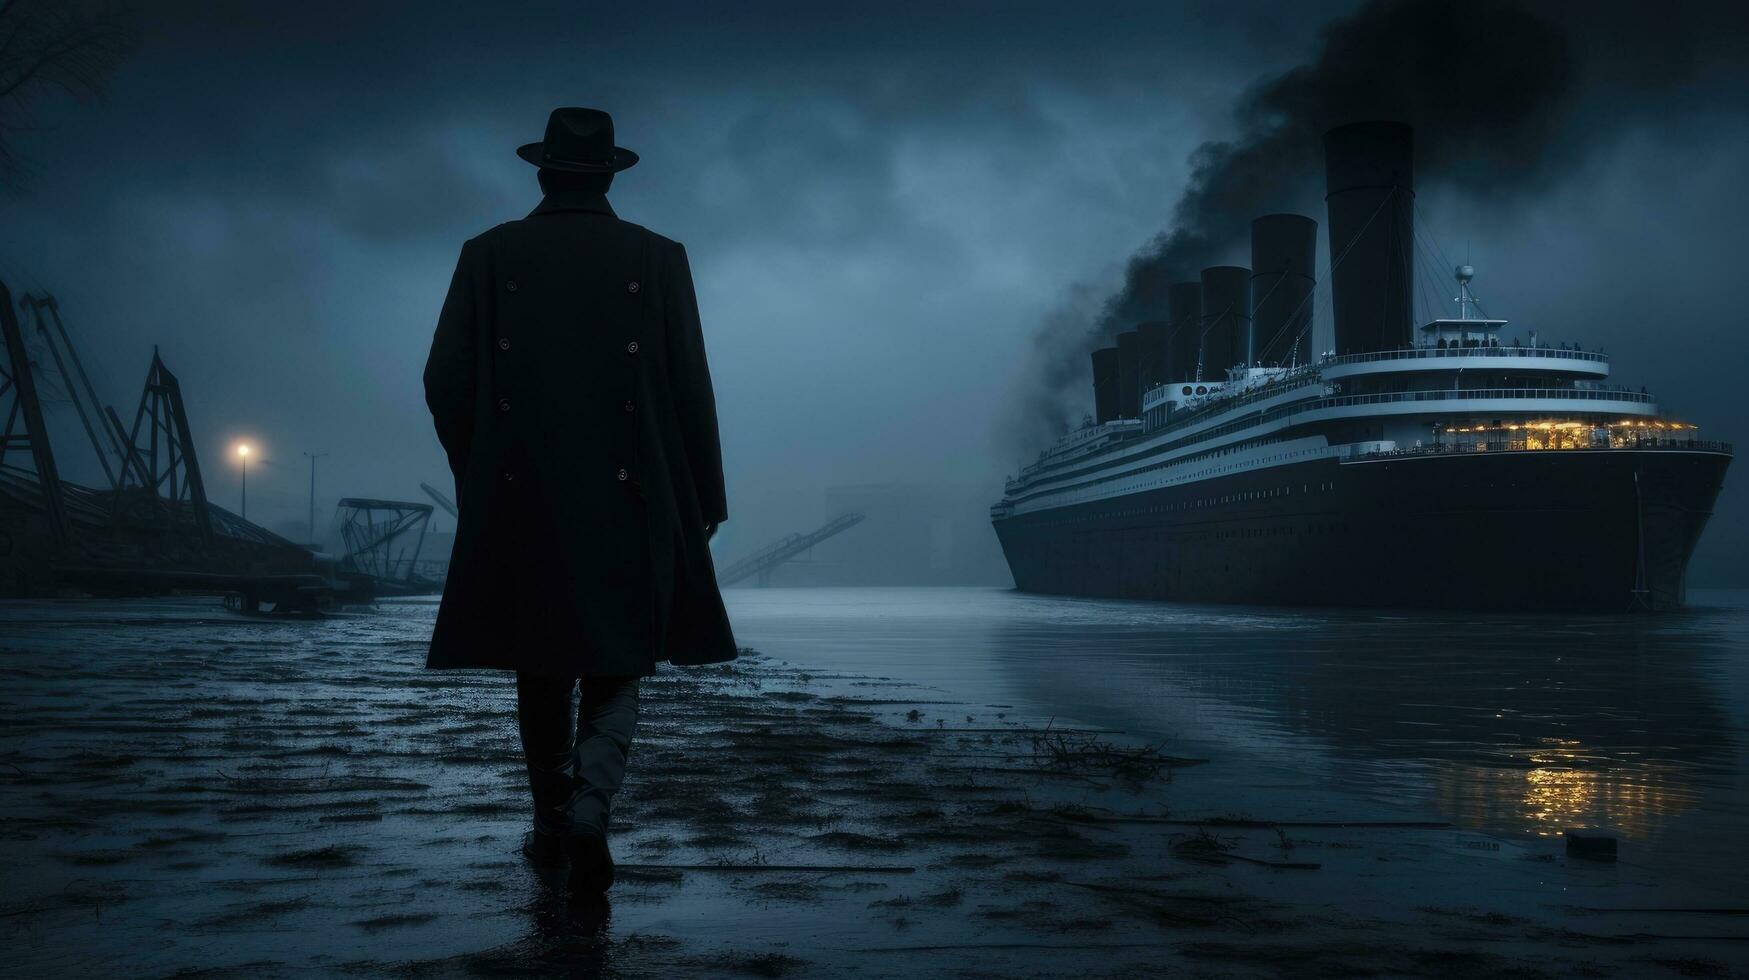 un figura en negro atuendo paseos junto a el buque en el banco foto